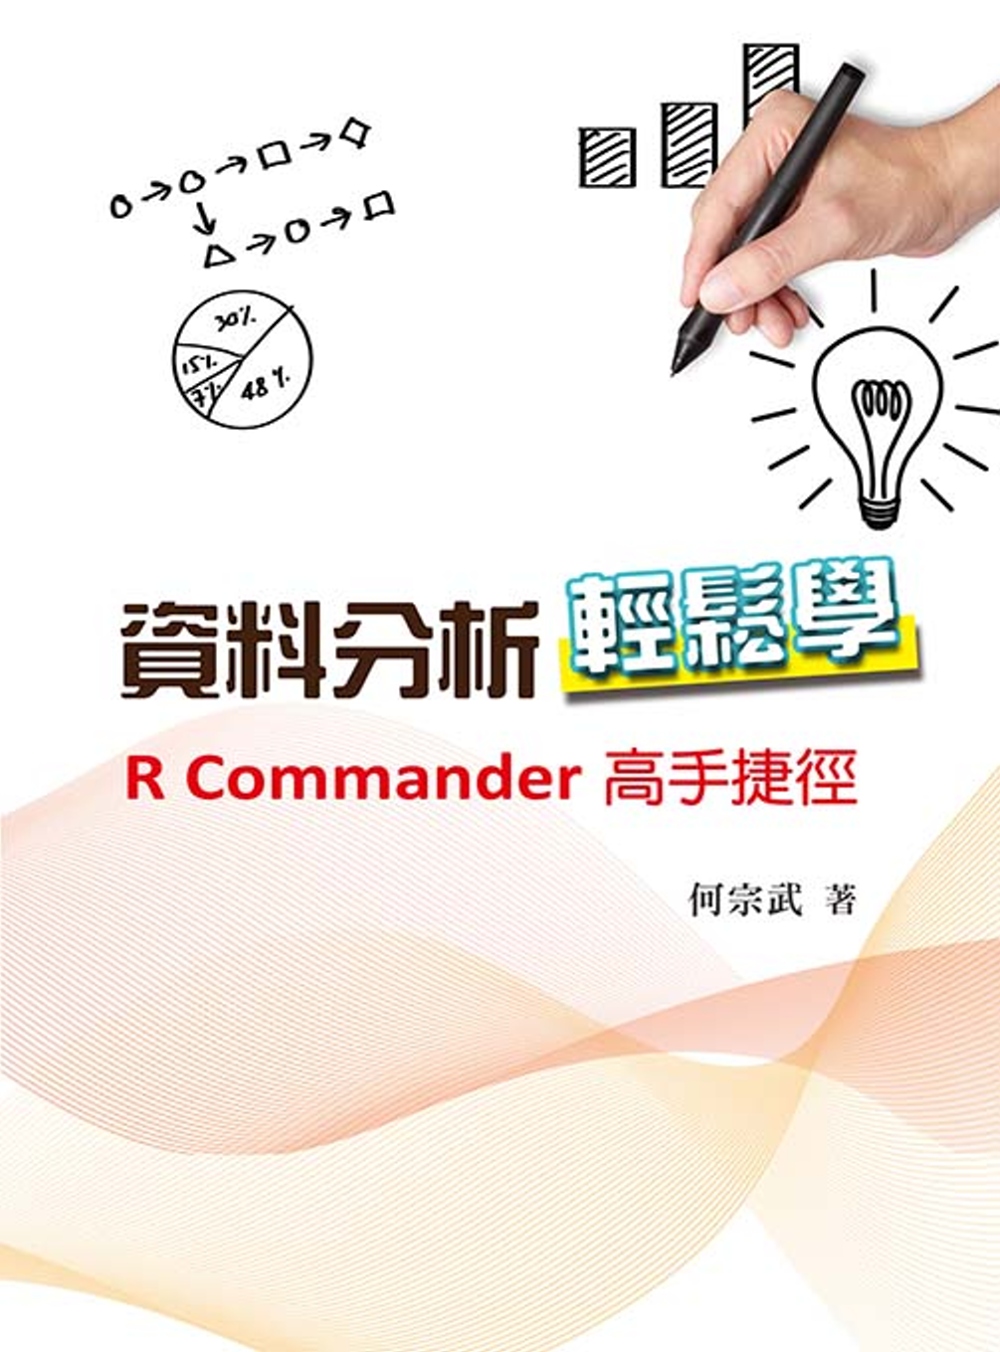 資料分析輕鬆學：R Commander高手捷徑